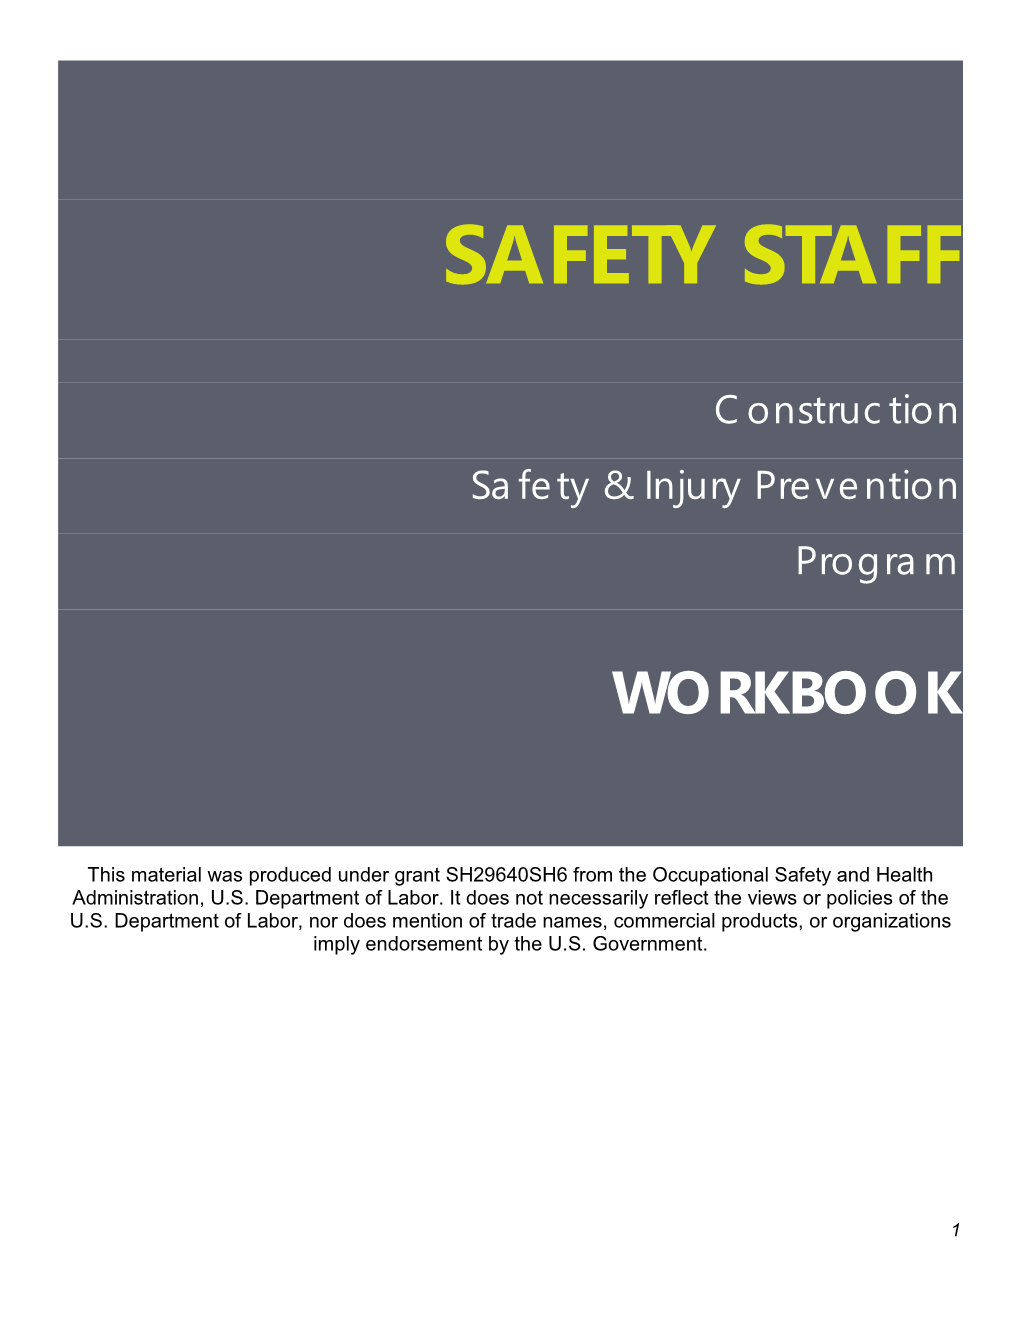 Safety Staff Workbook